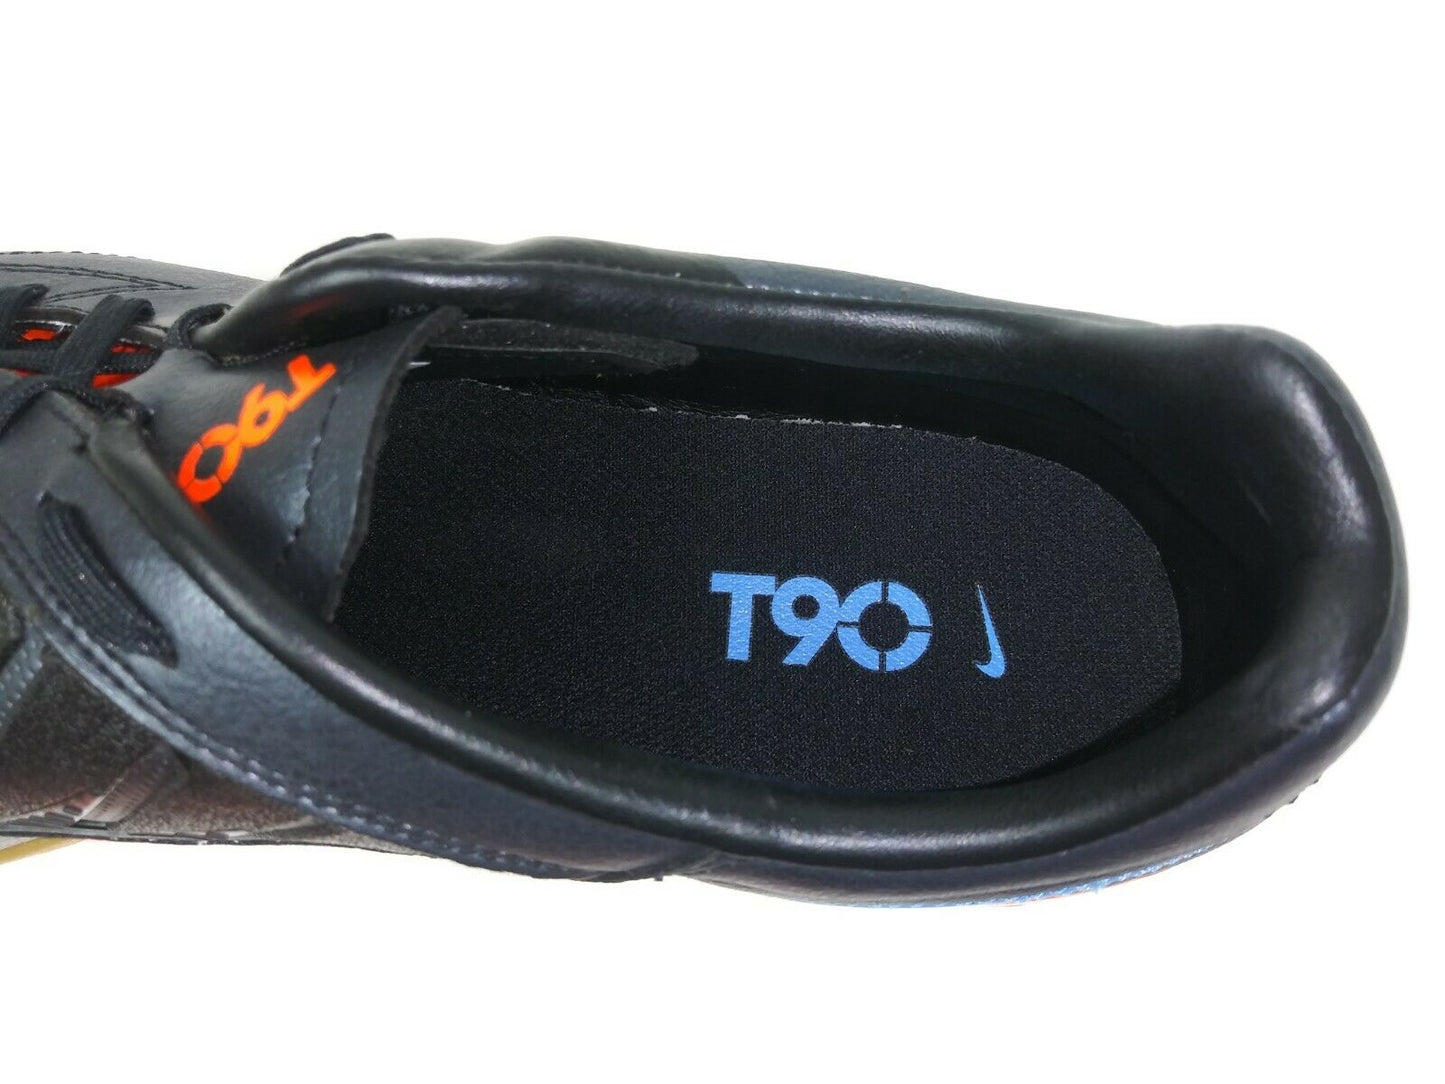 Nike T90 Shoot IV IC Indoor Shoes Orange Black